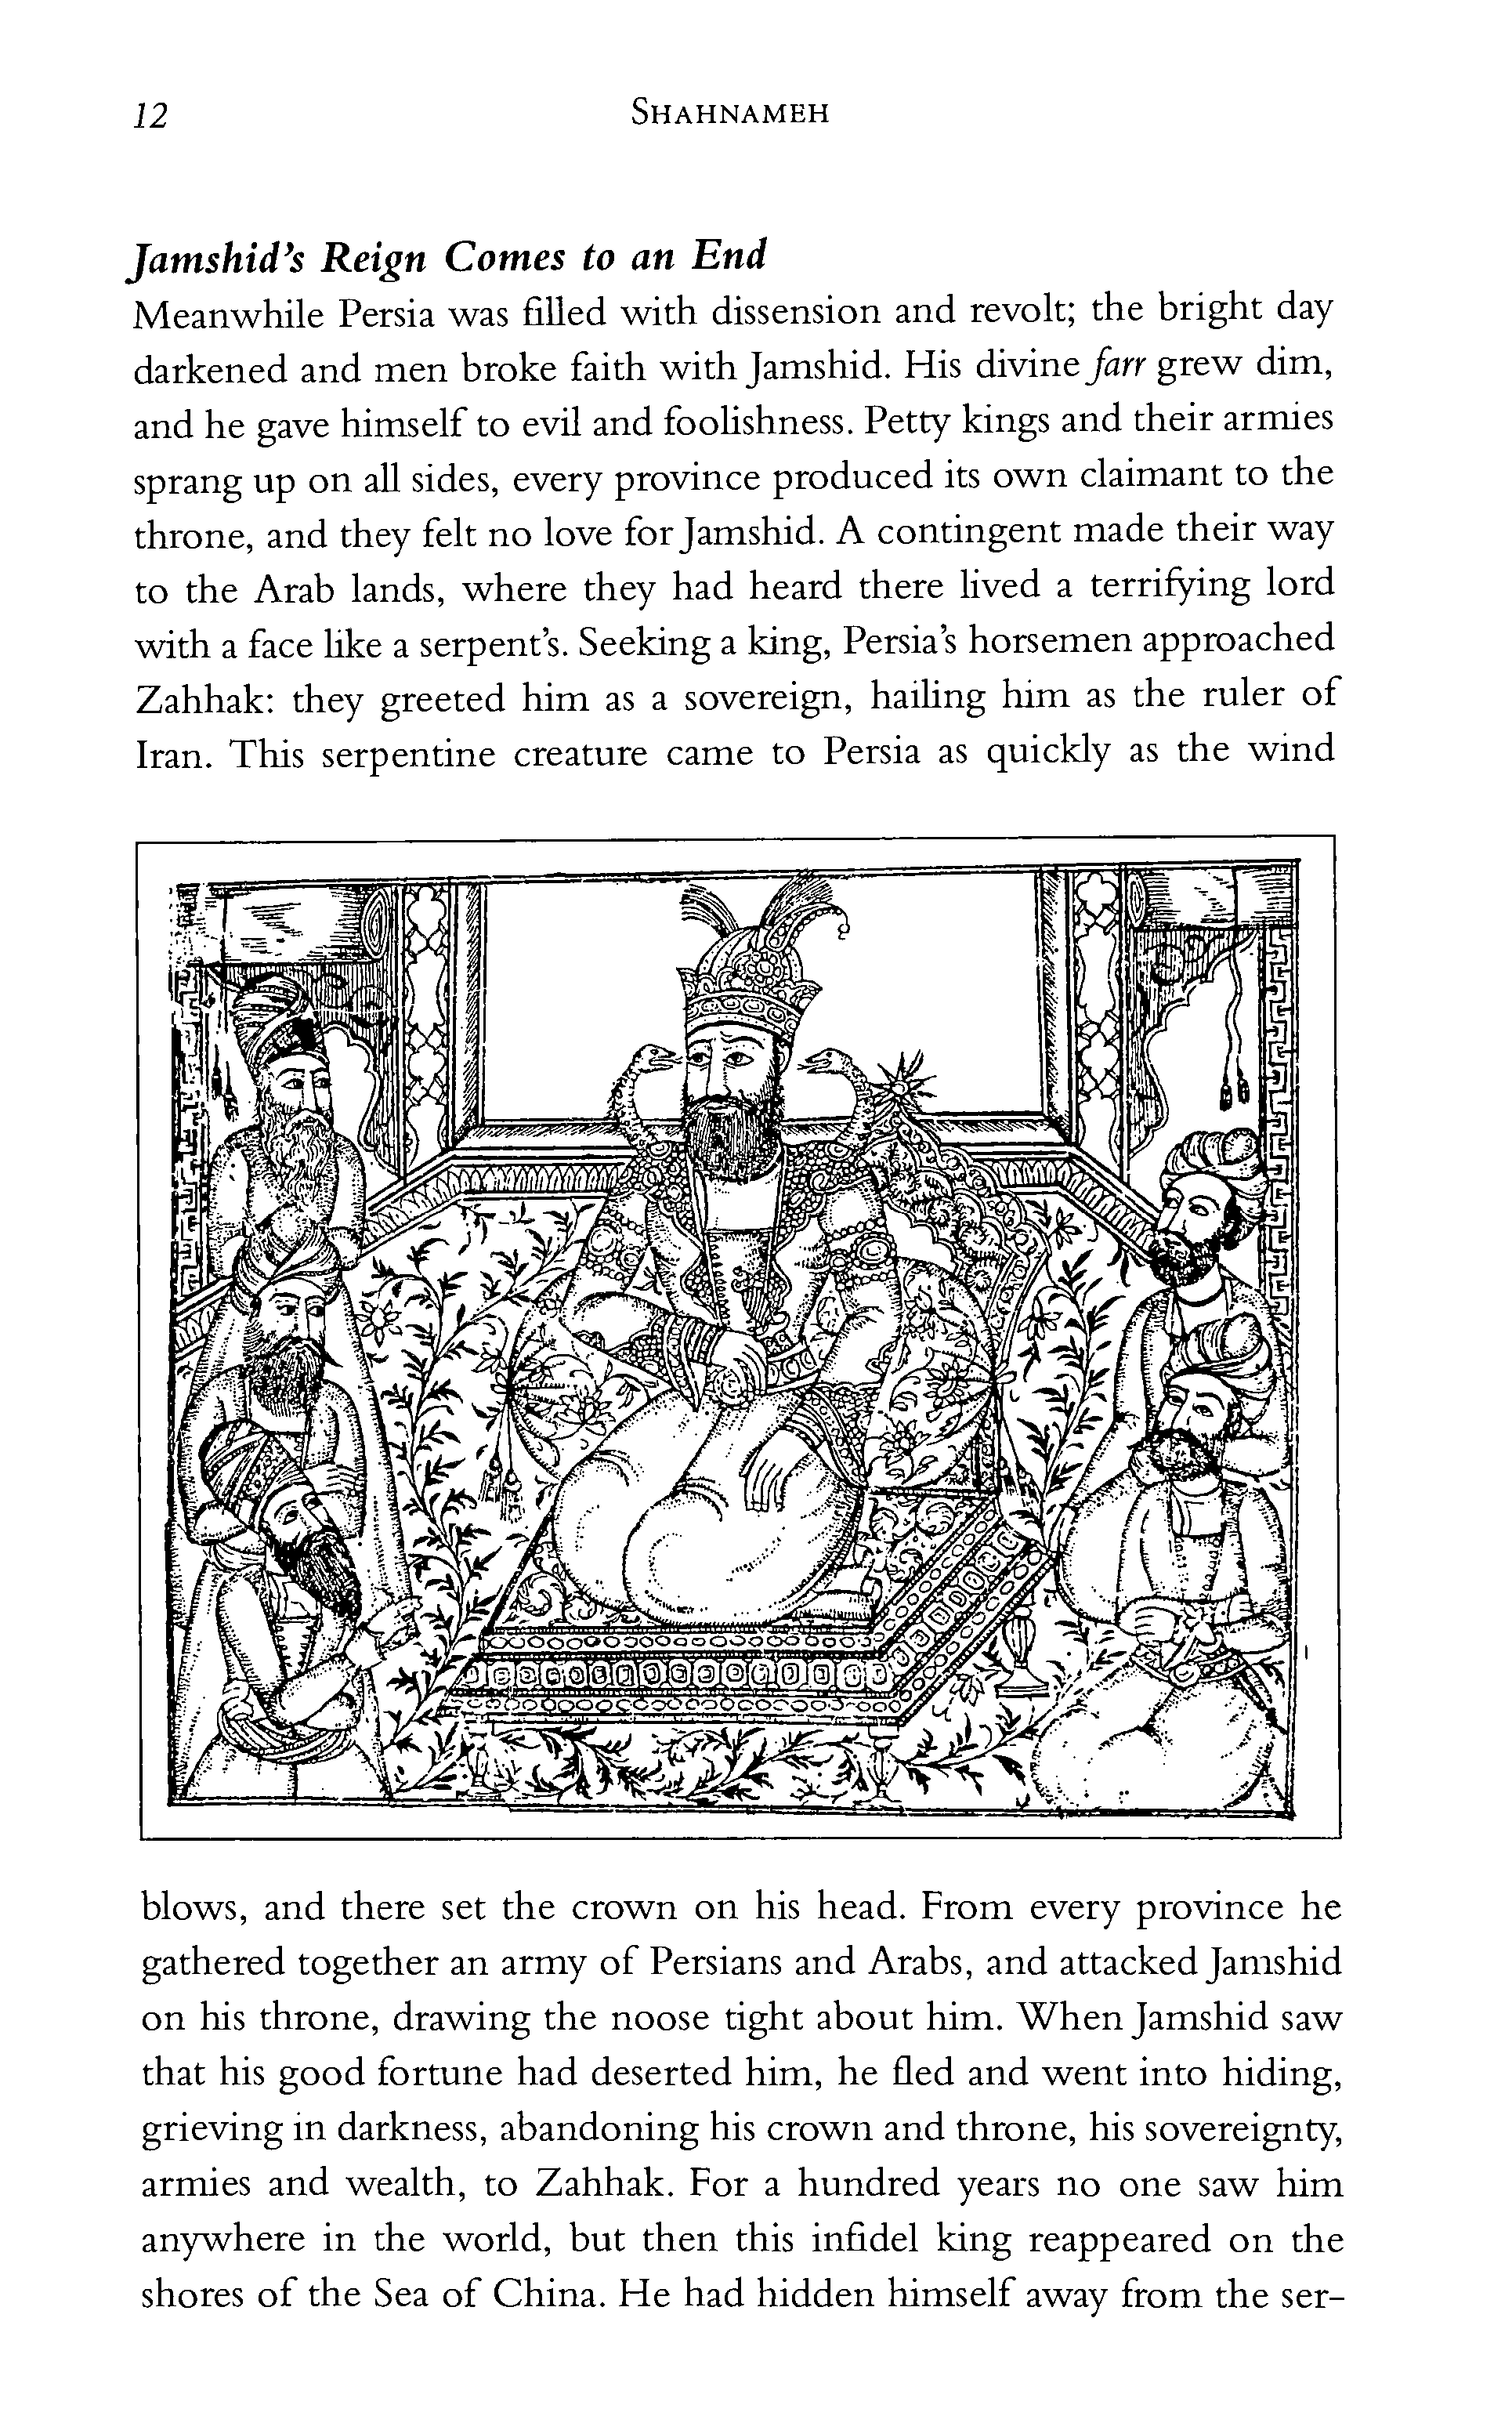 p. 12